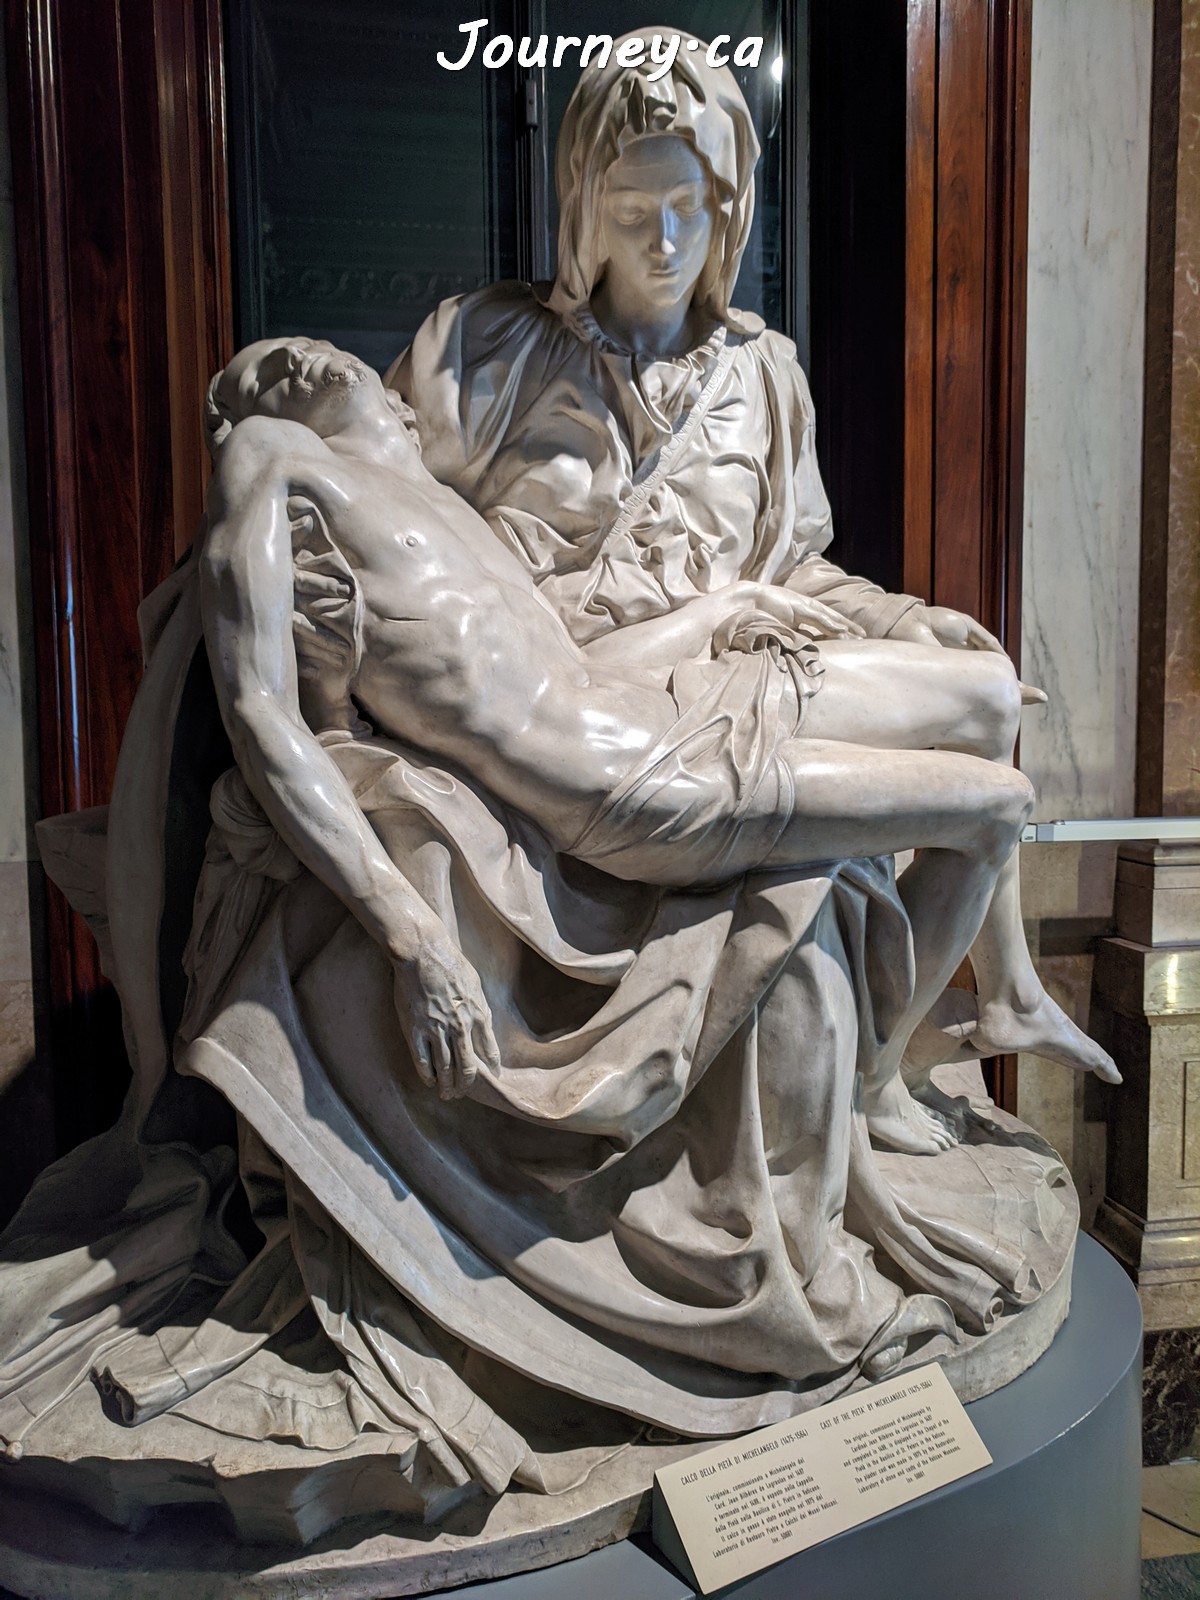 Pietà - Sculpture by Michelangelo